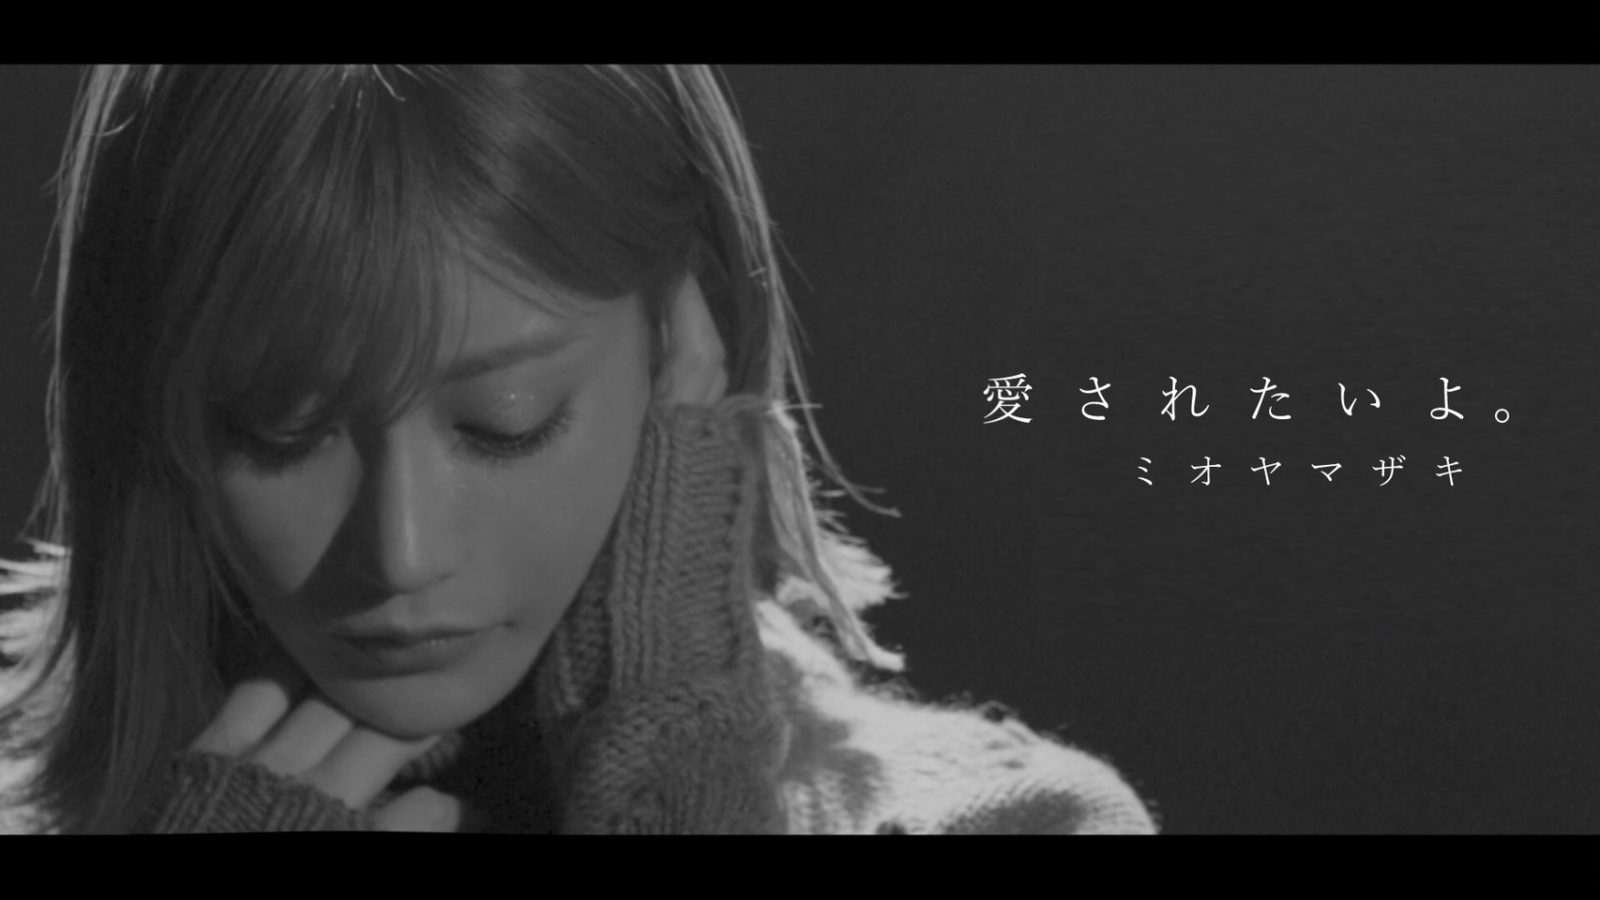 ミオヤマザキの新曲MVに、明日花キララが出演！大きな共感を呼ぶ映像作品が完成サムネイル画像!